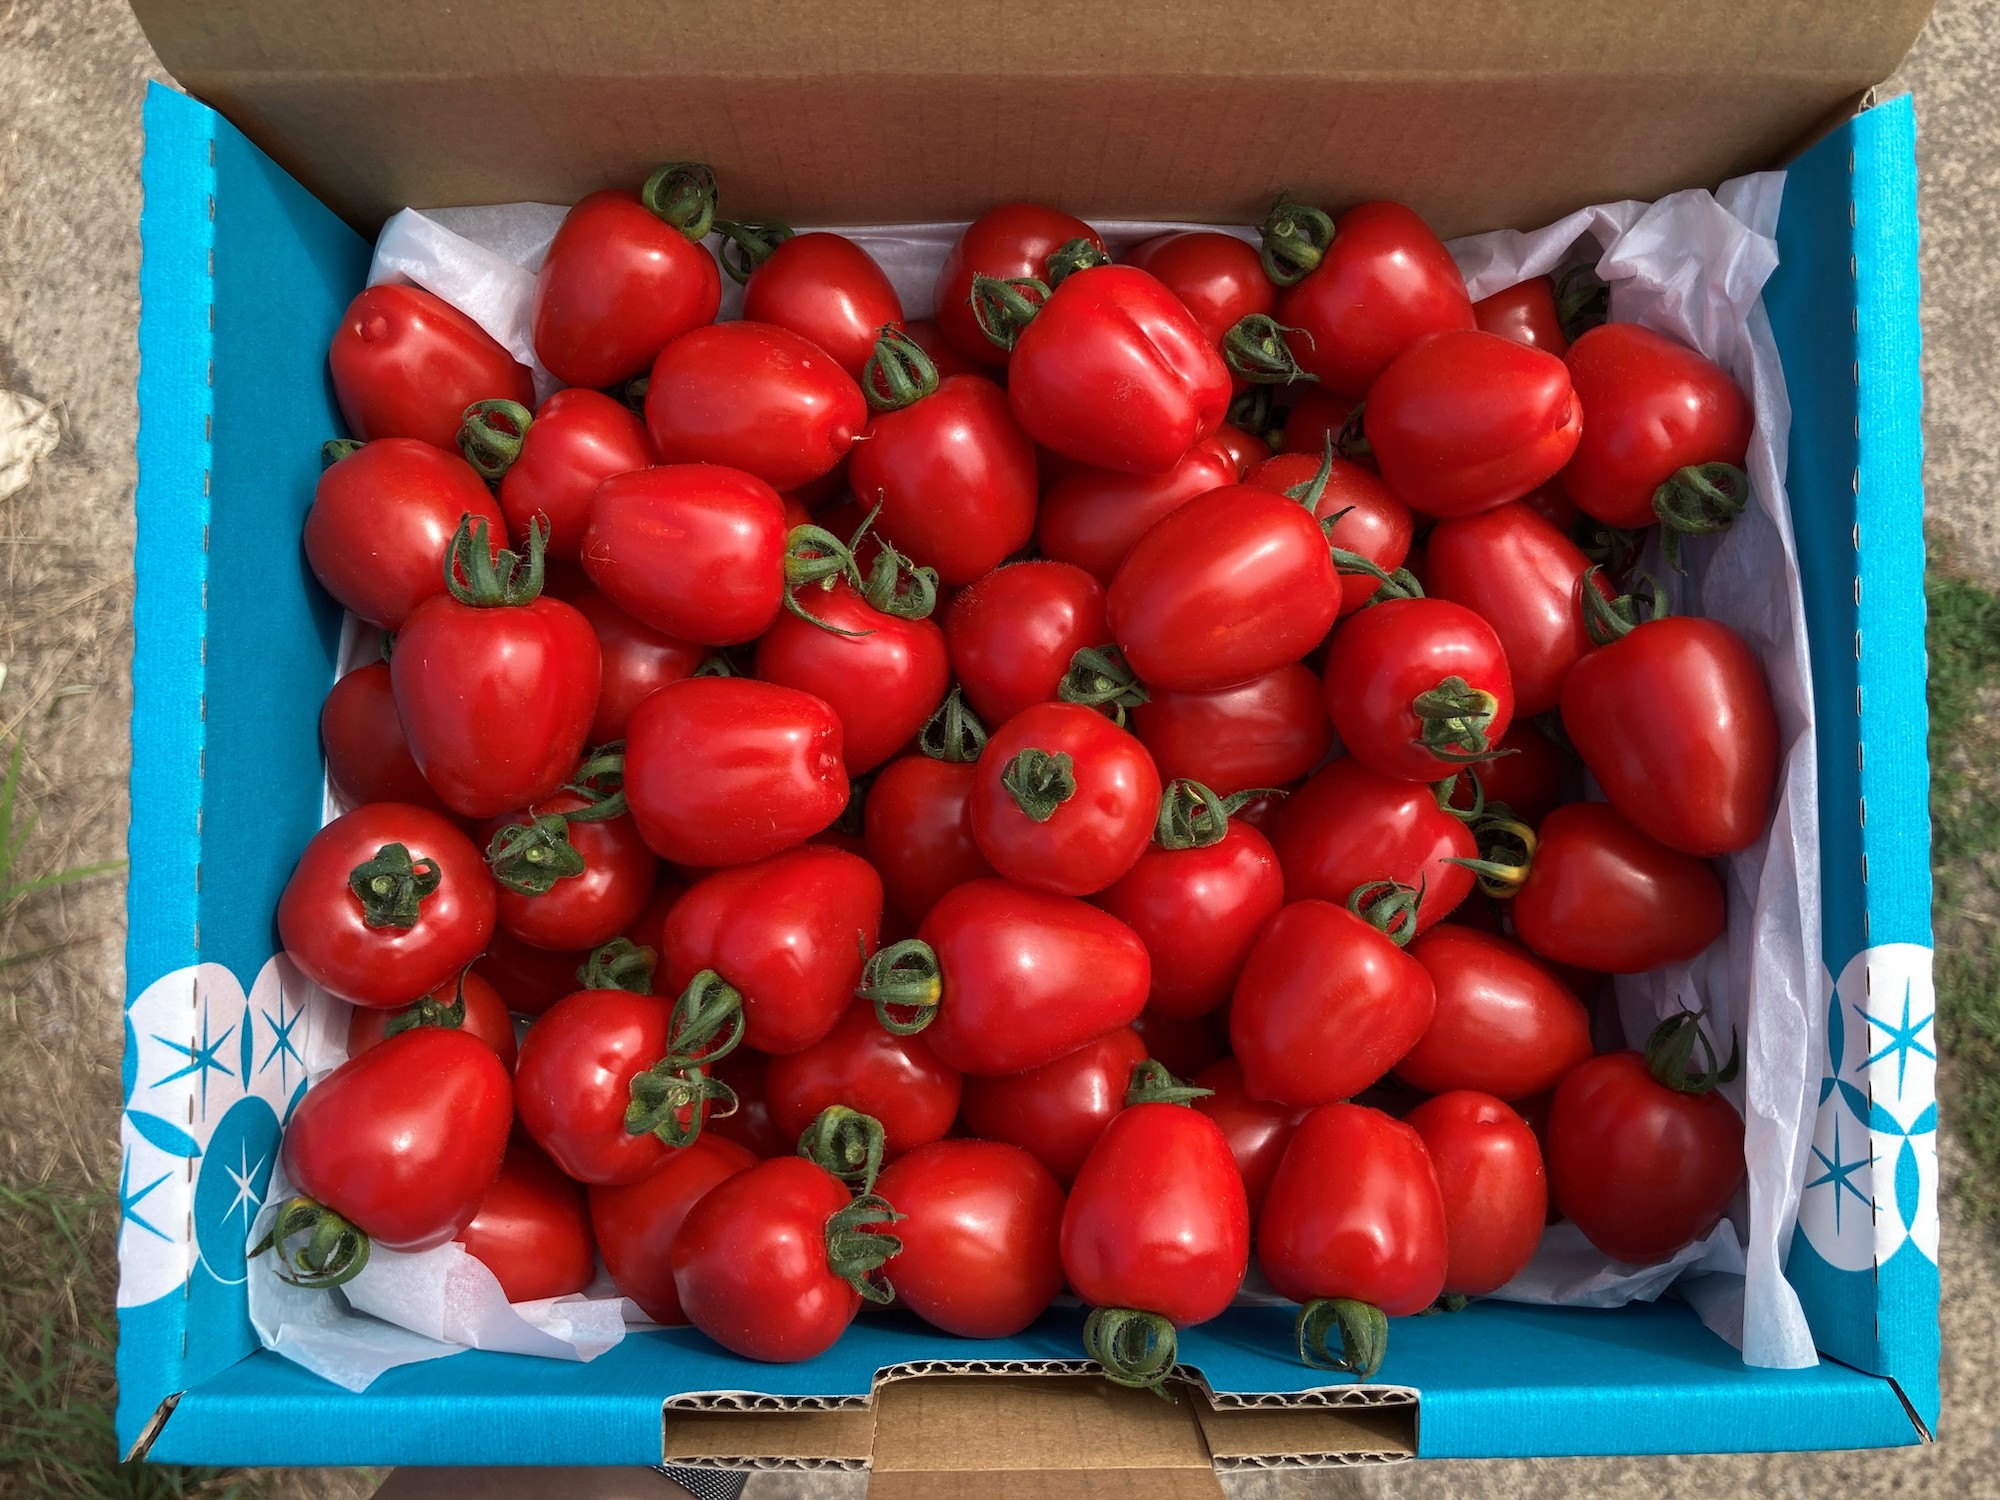 〔予約受付中〕しおかぜの畑 中野ファーム 余市産 トマトベリー 1.5kg(2023年初夏発送) ミニトマト